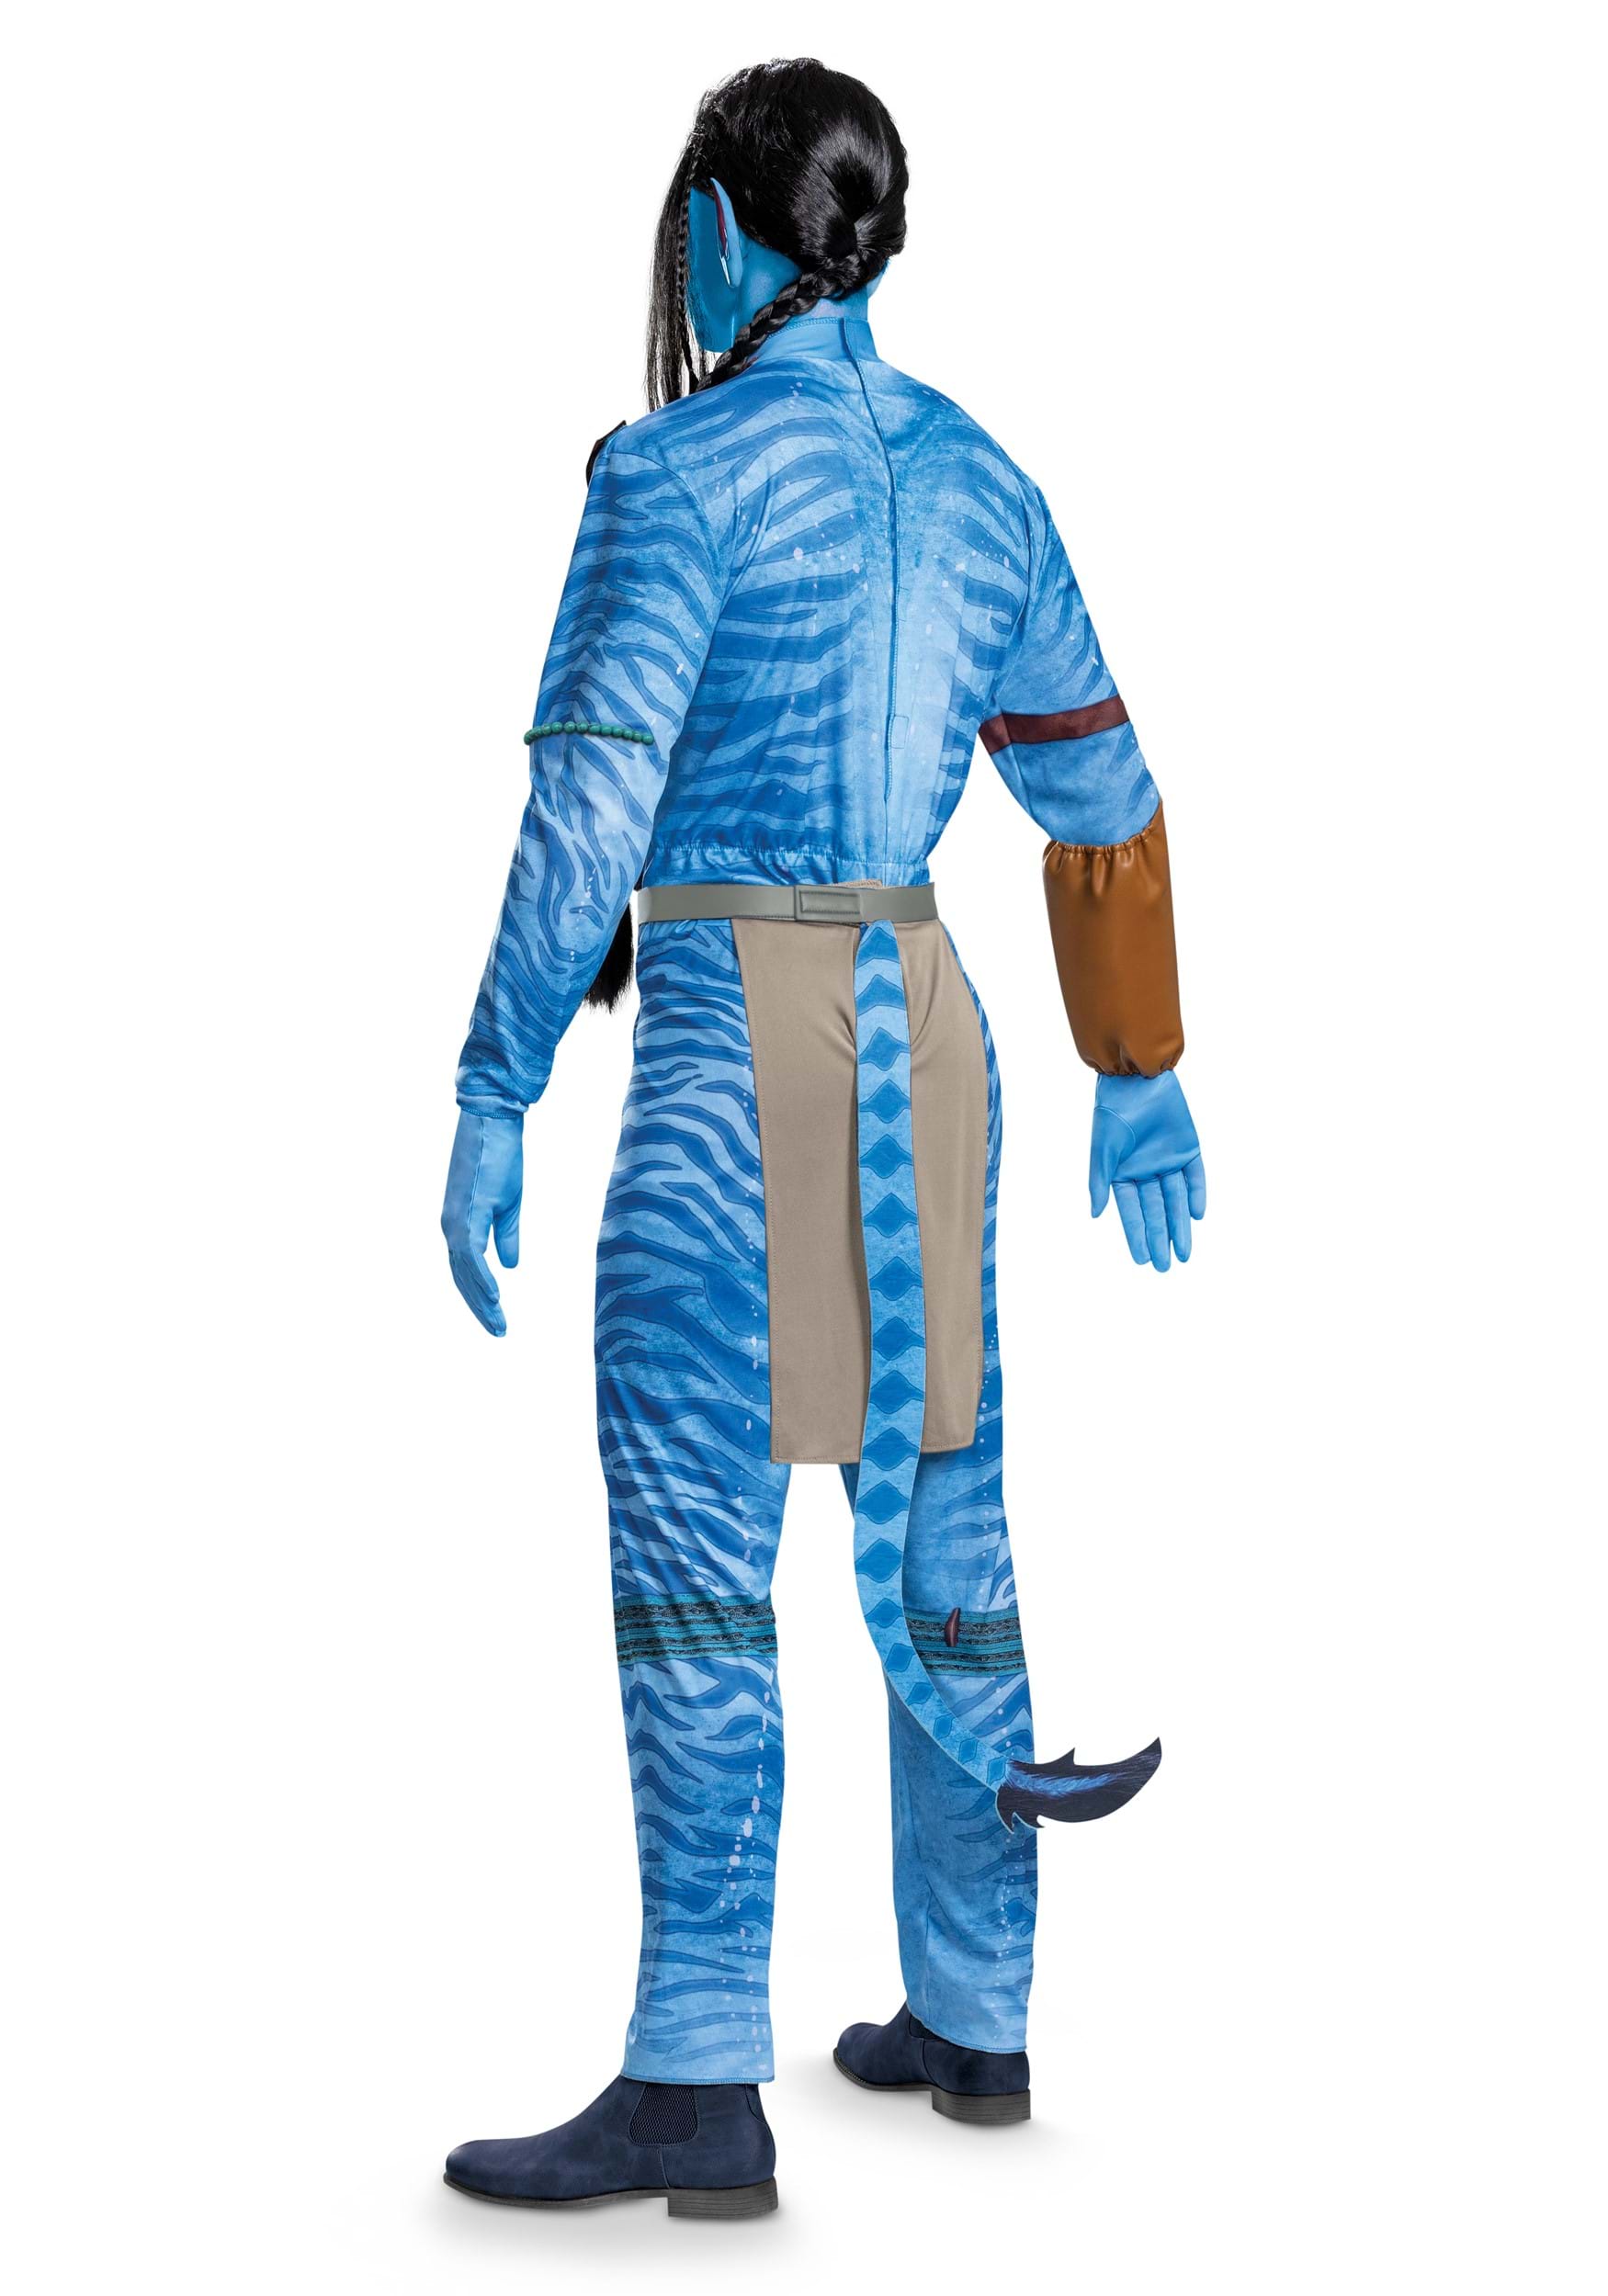 Avatar Deluxe Jake Men's Costume